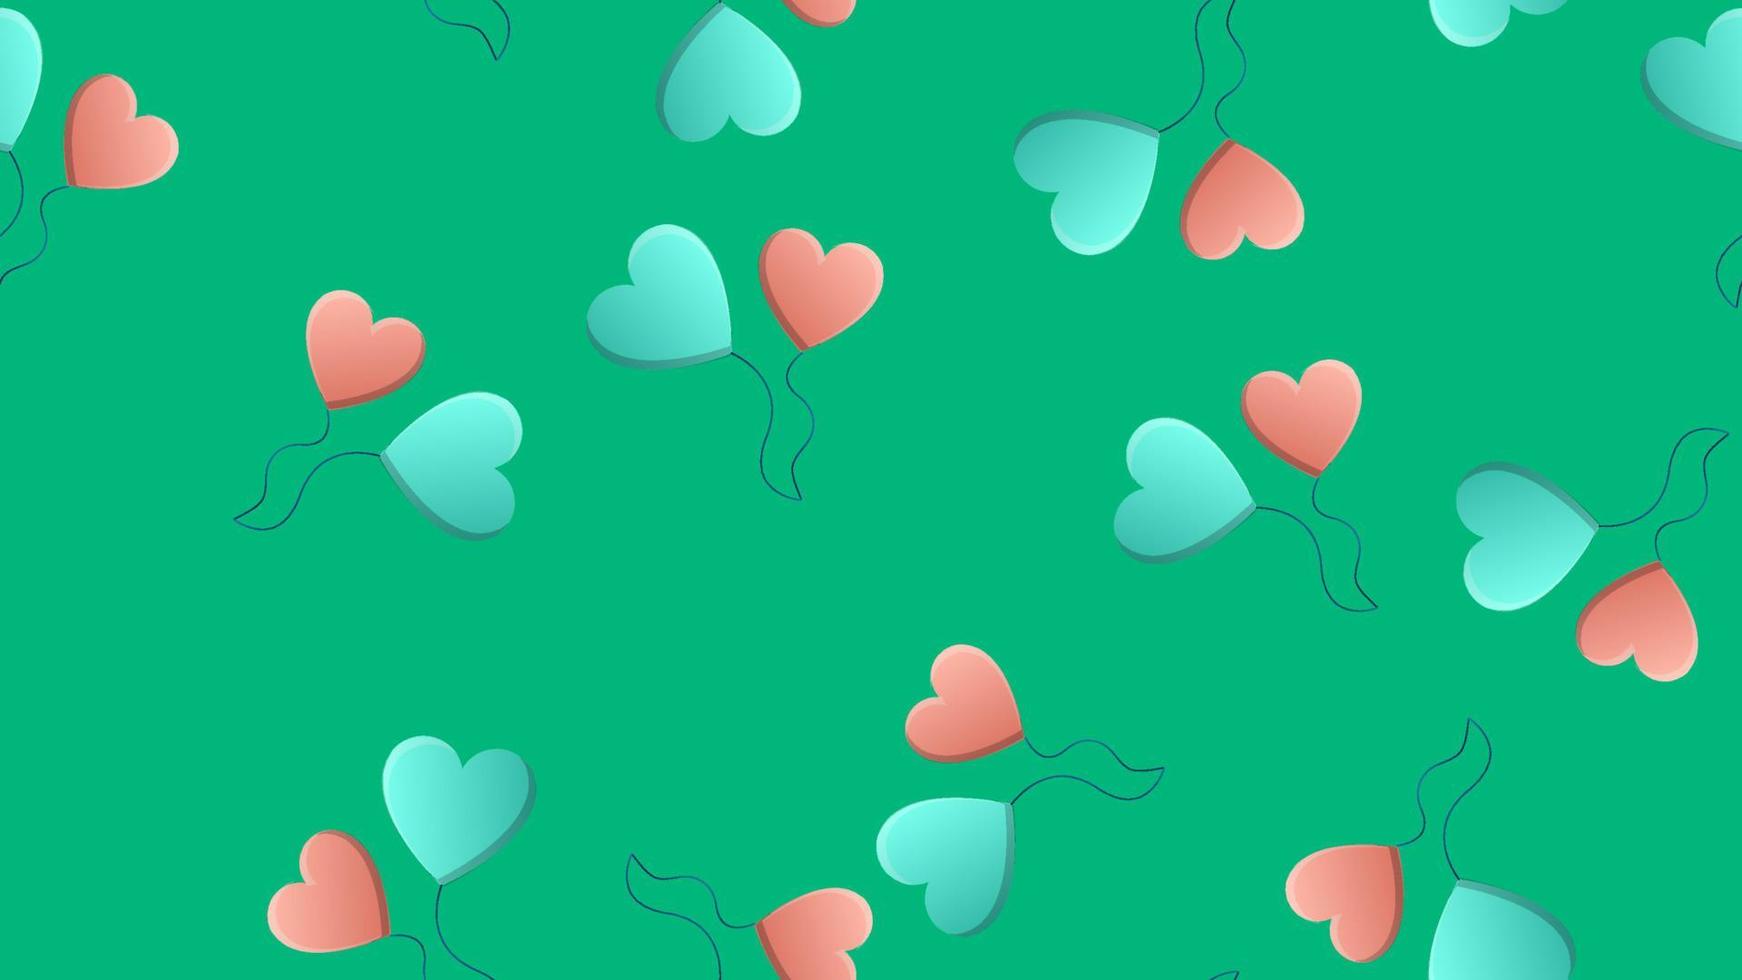 motif harmonieux sans fin de beaux ballons en forme de coeur tendres et joyeux d'amour festif sur fond vert. illustration vectorielle vecteur